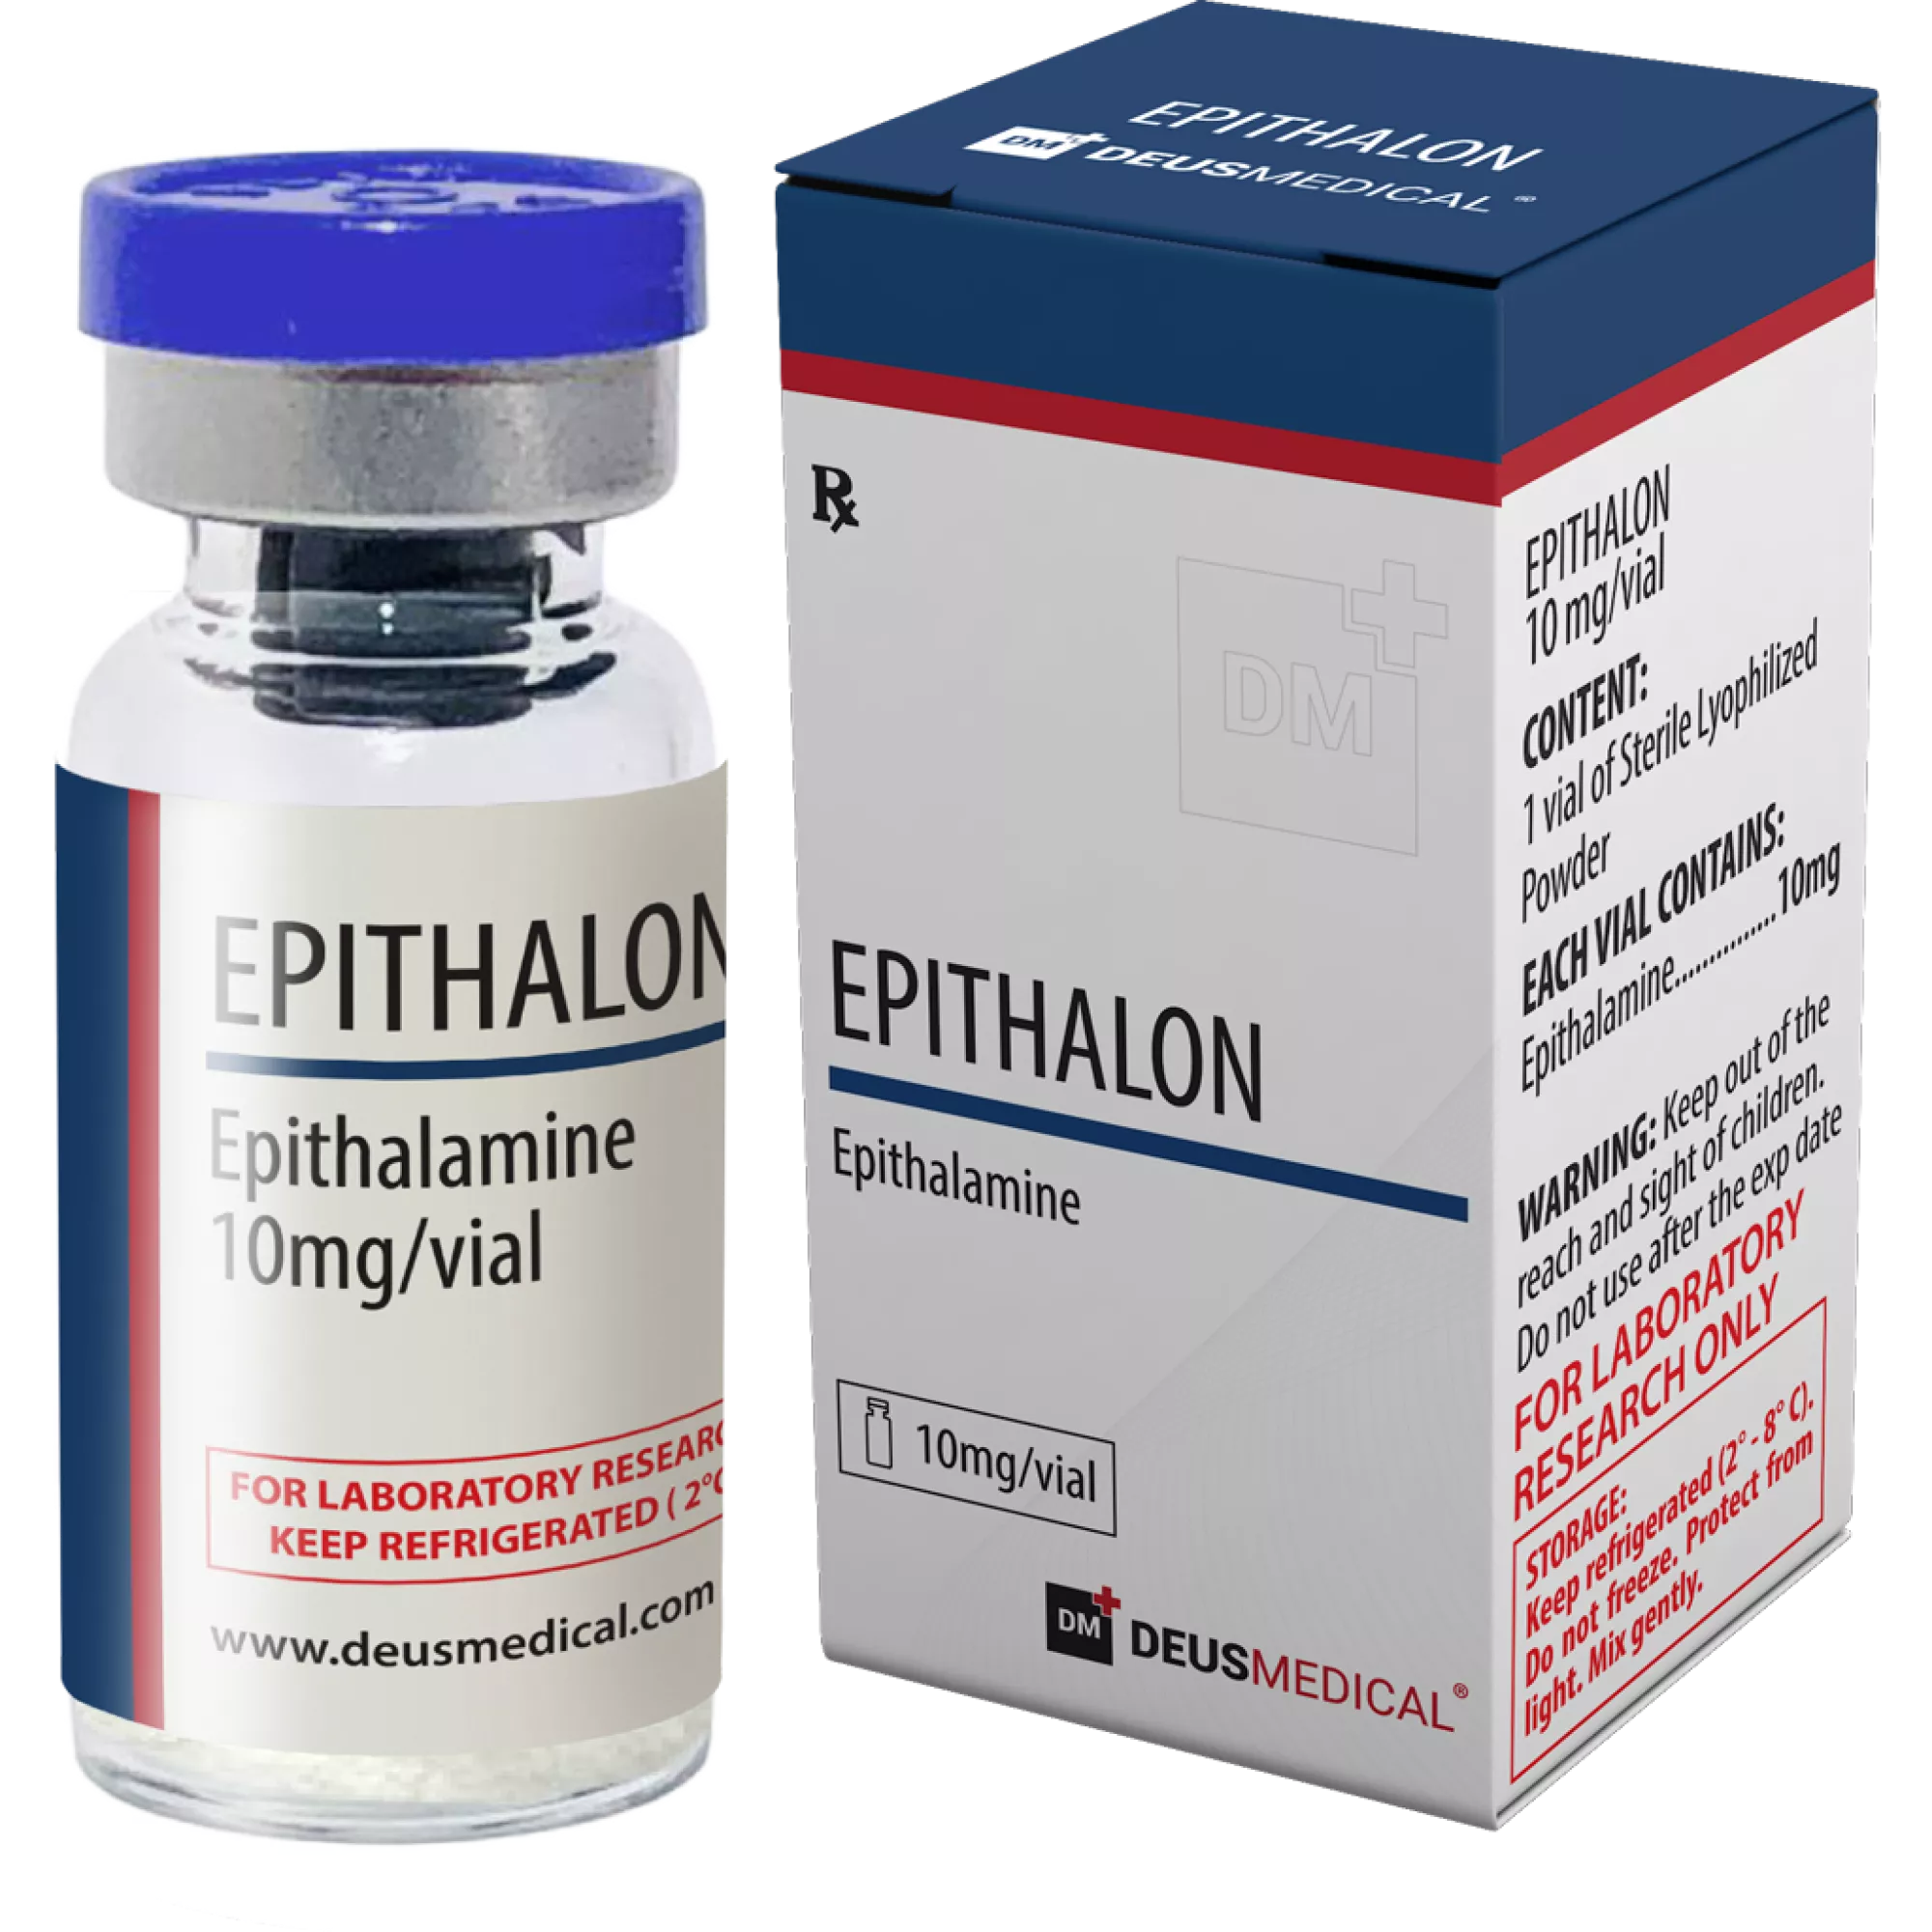 EPITHALON (Epithalamin), Deus Medical, Kaufen Sie Steroide Online - www.deuspower.shop